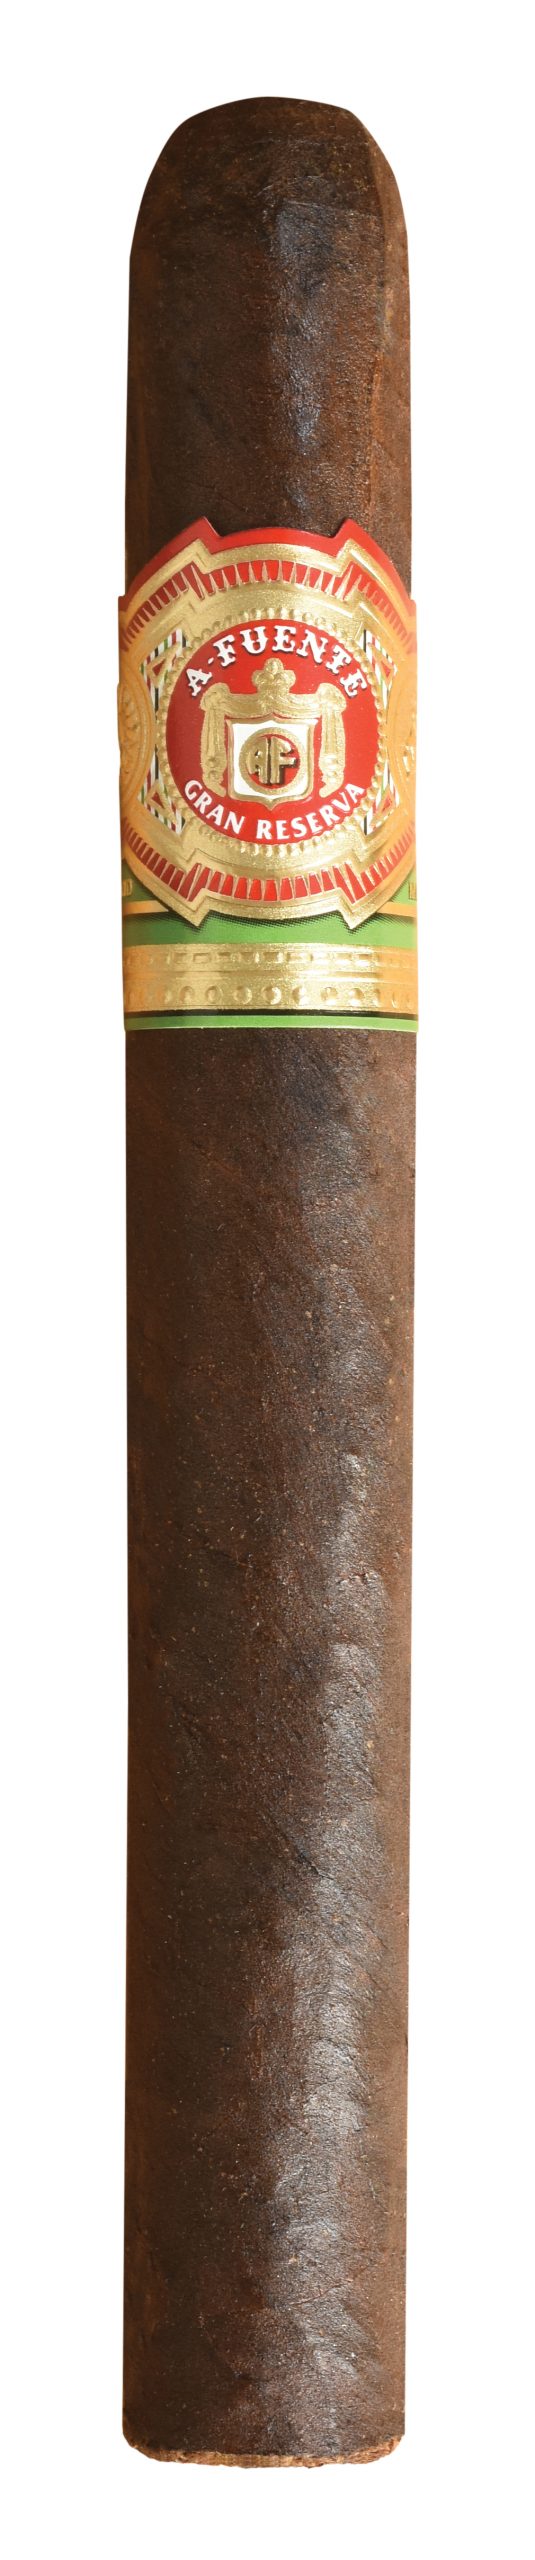 arturo fuente 8 5 8 maduro single cigar